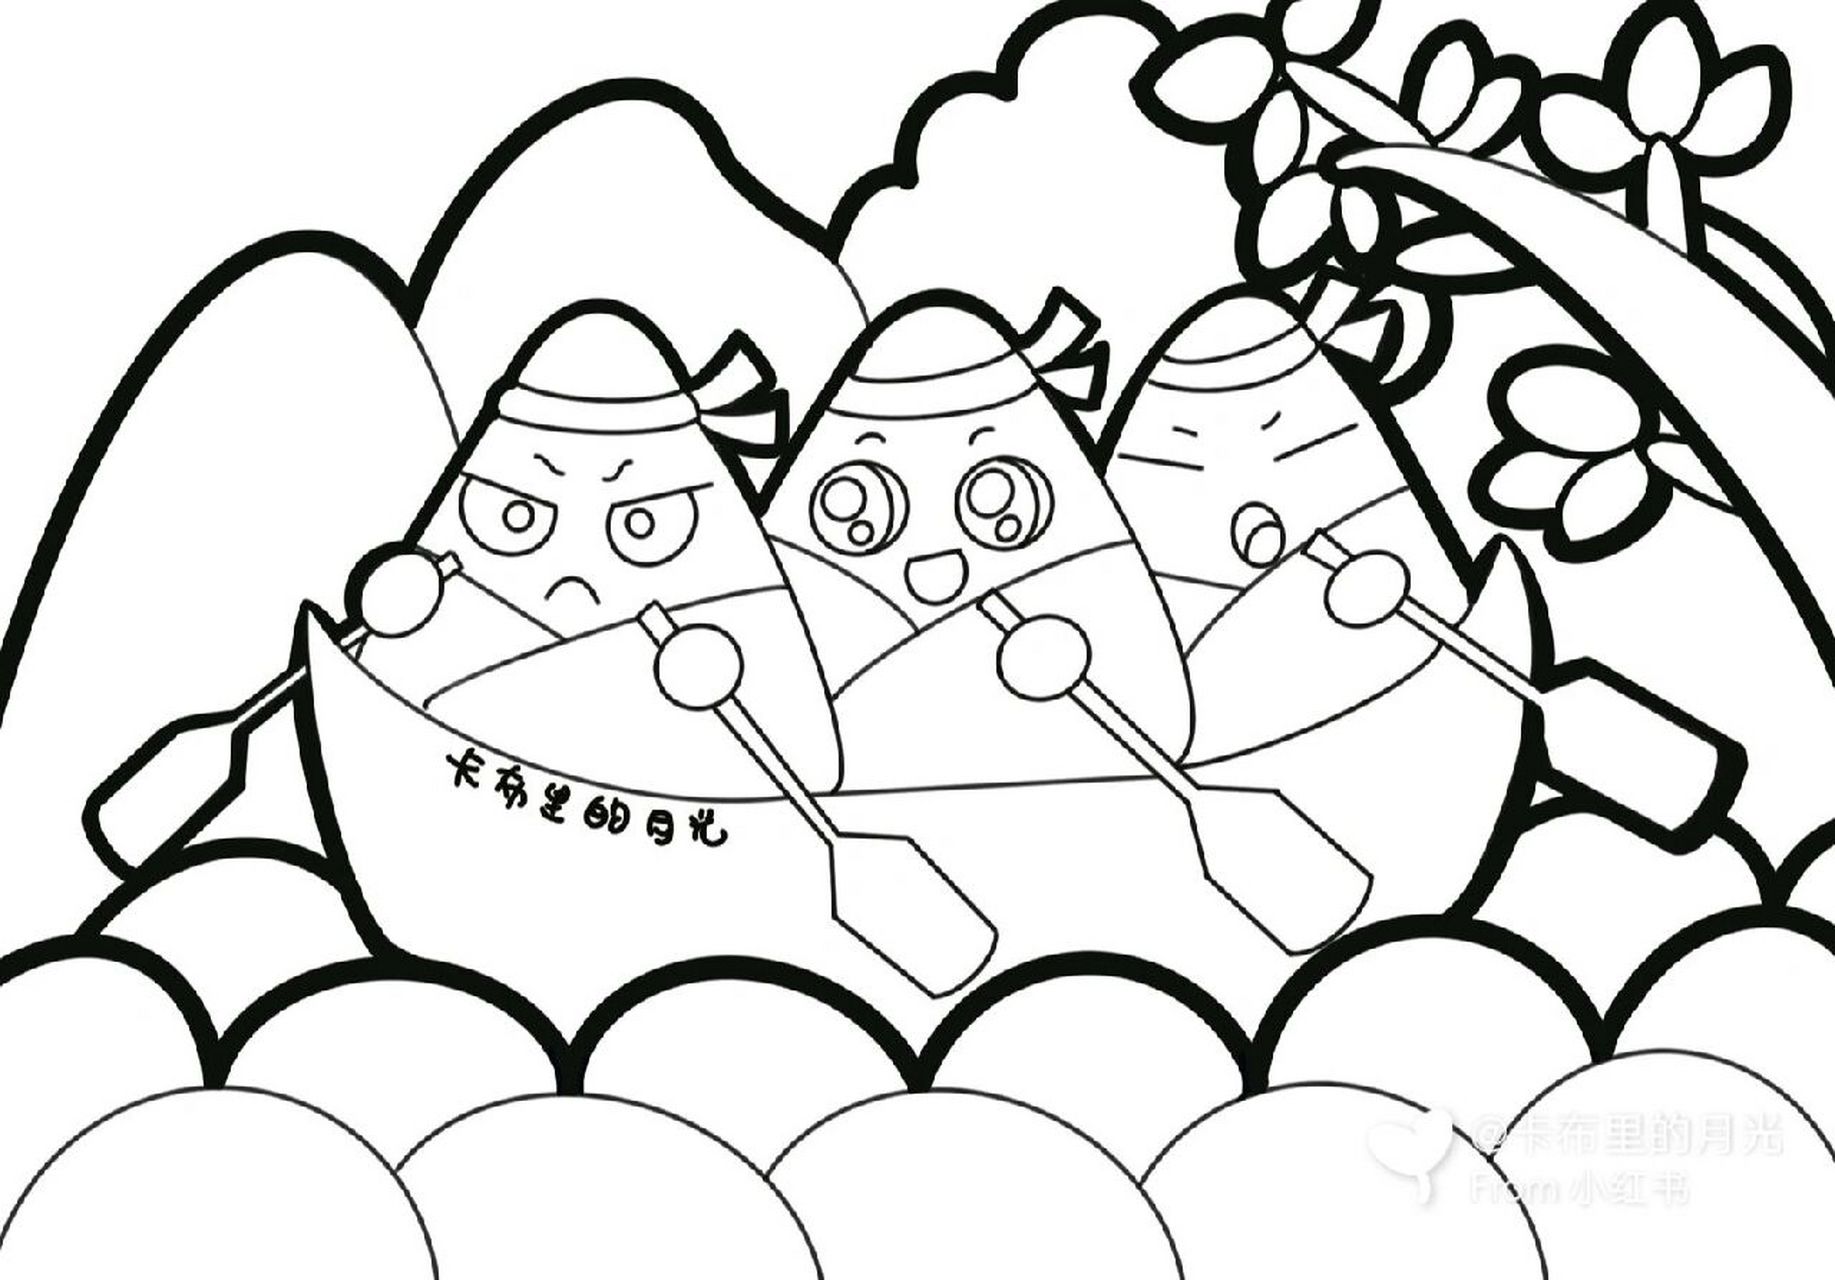 端午节《粽子划龙舟》(儿童画) (卡通画 )端午节,又称端阳节,龙舟节